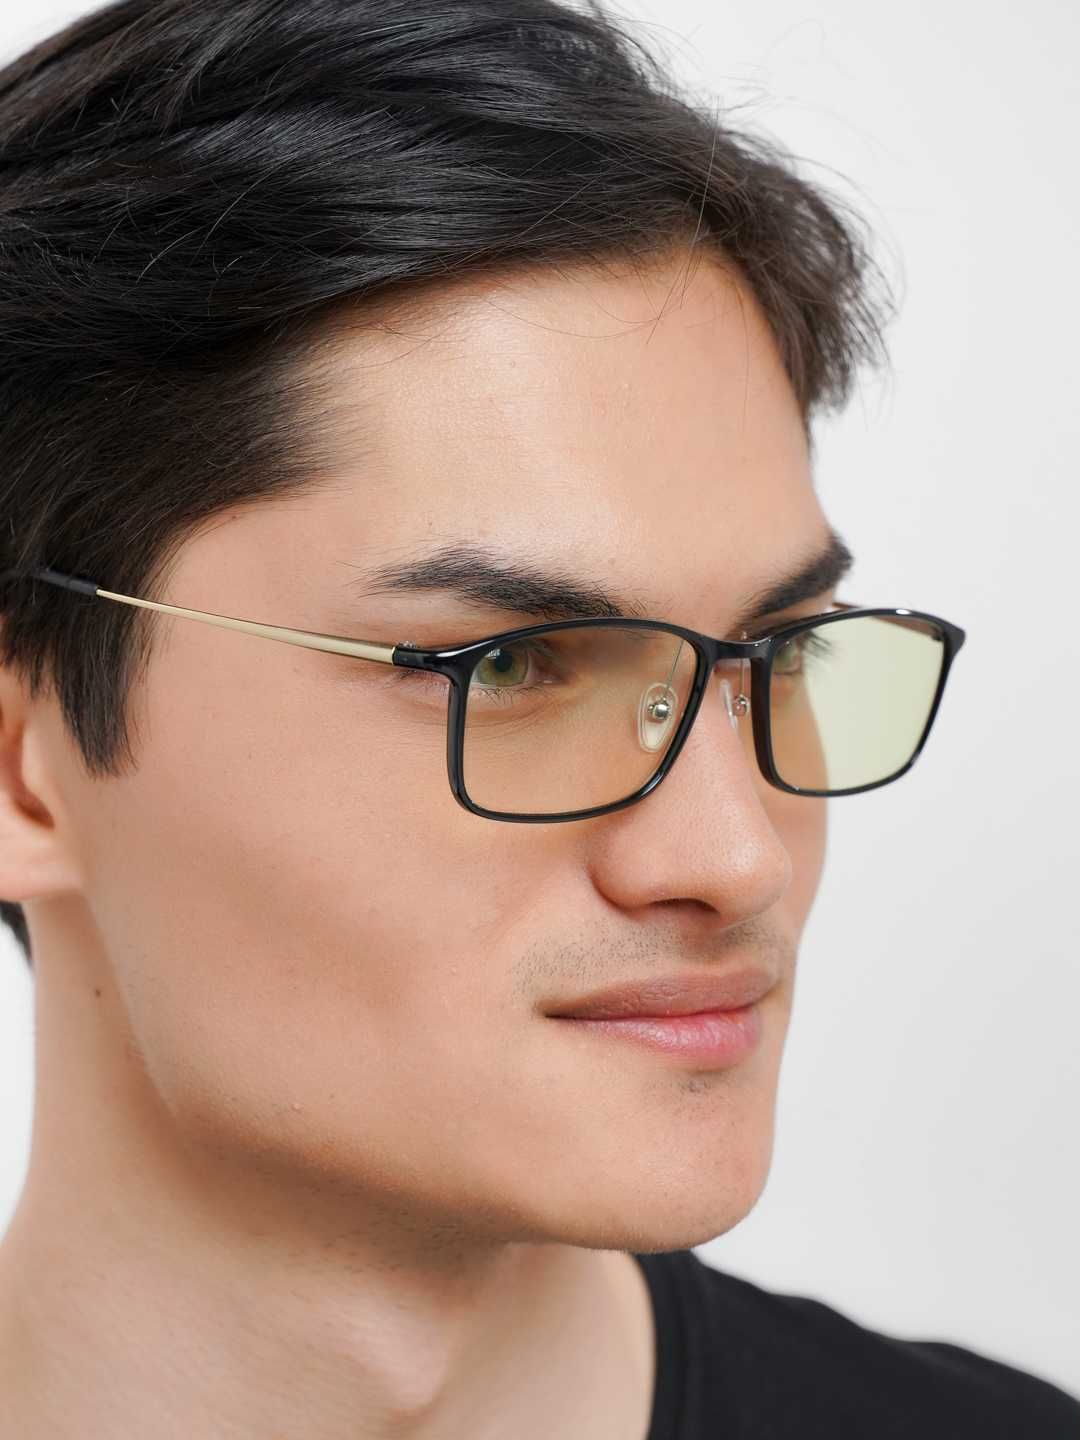 Компьютерные очки Xiaomi Mi Computer Glasses HMJ01TS